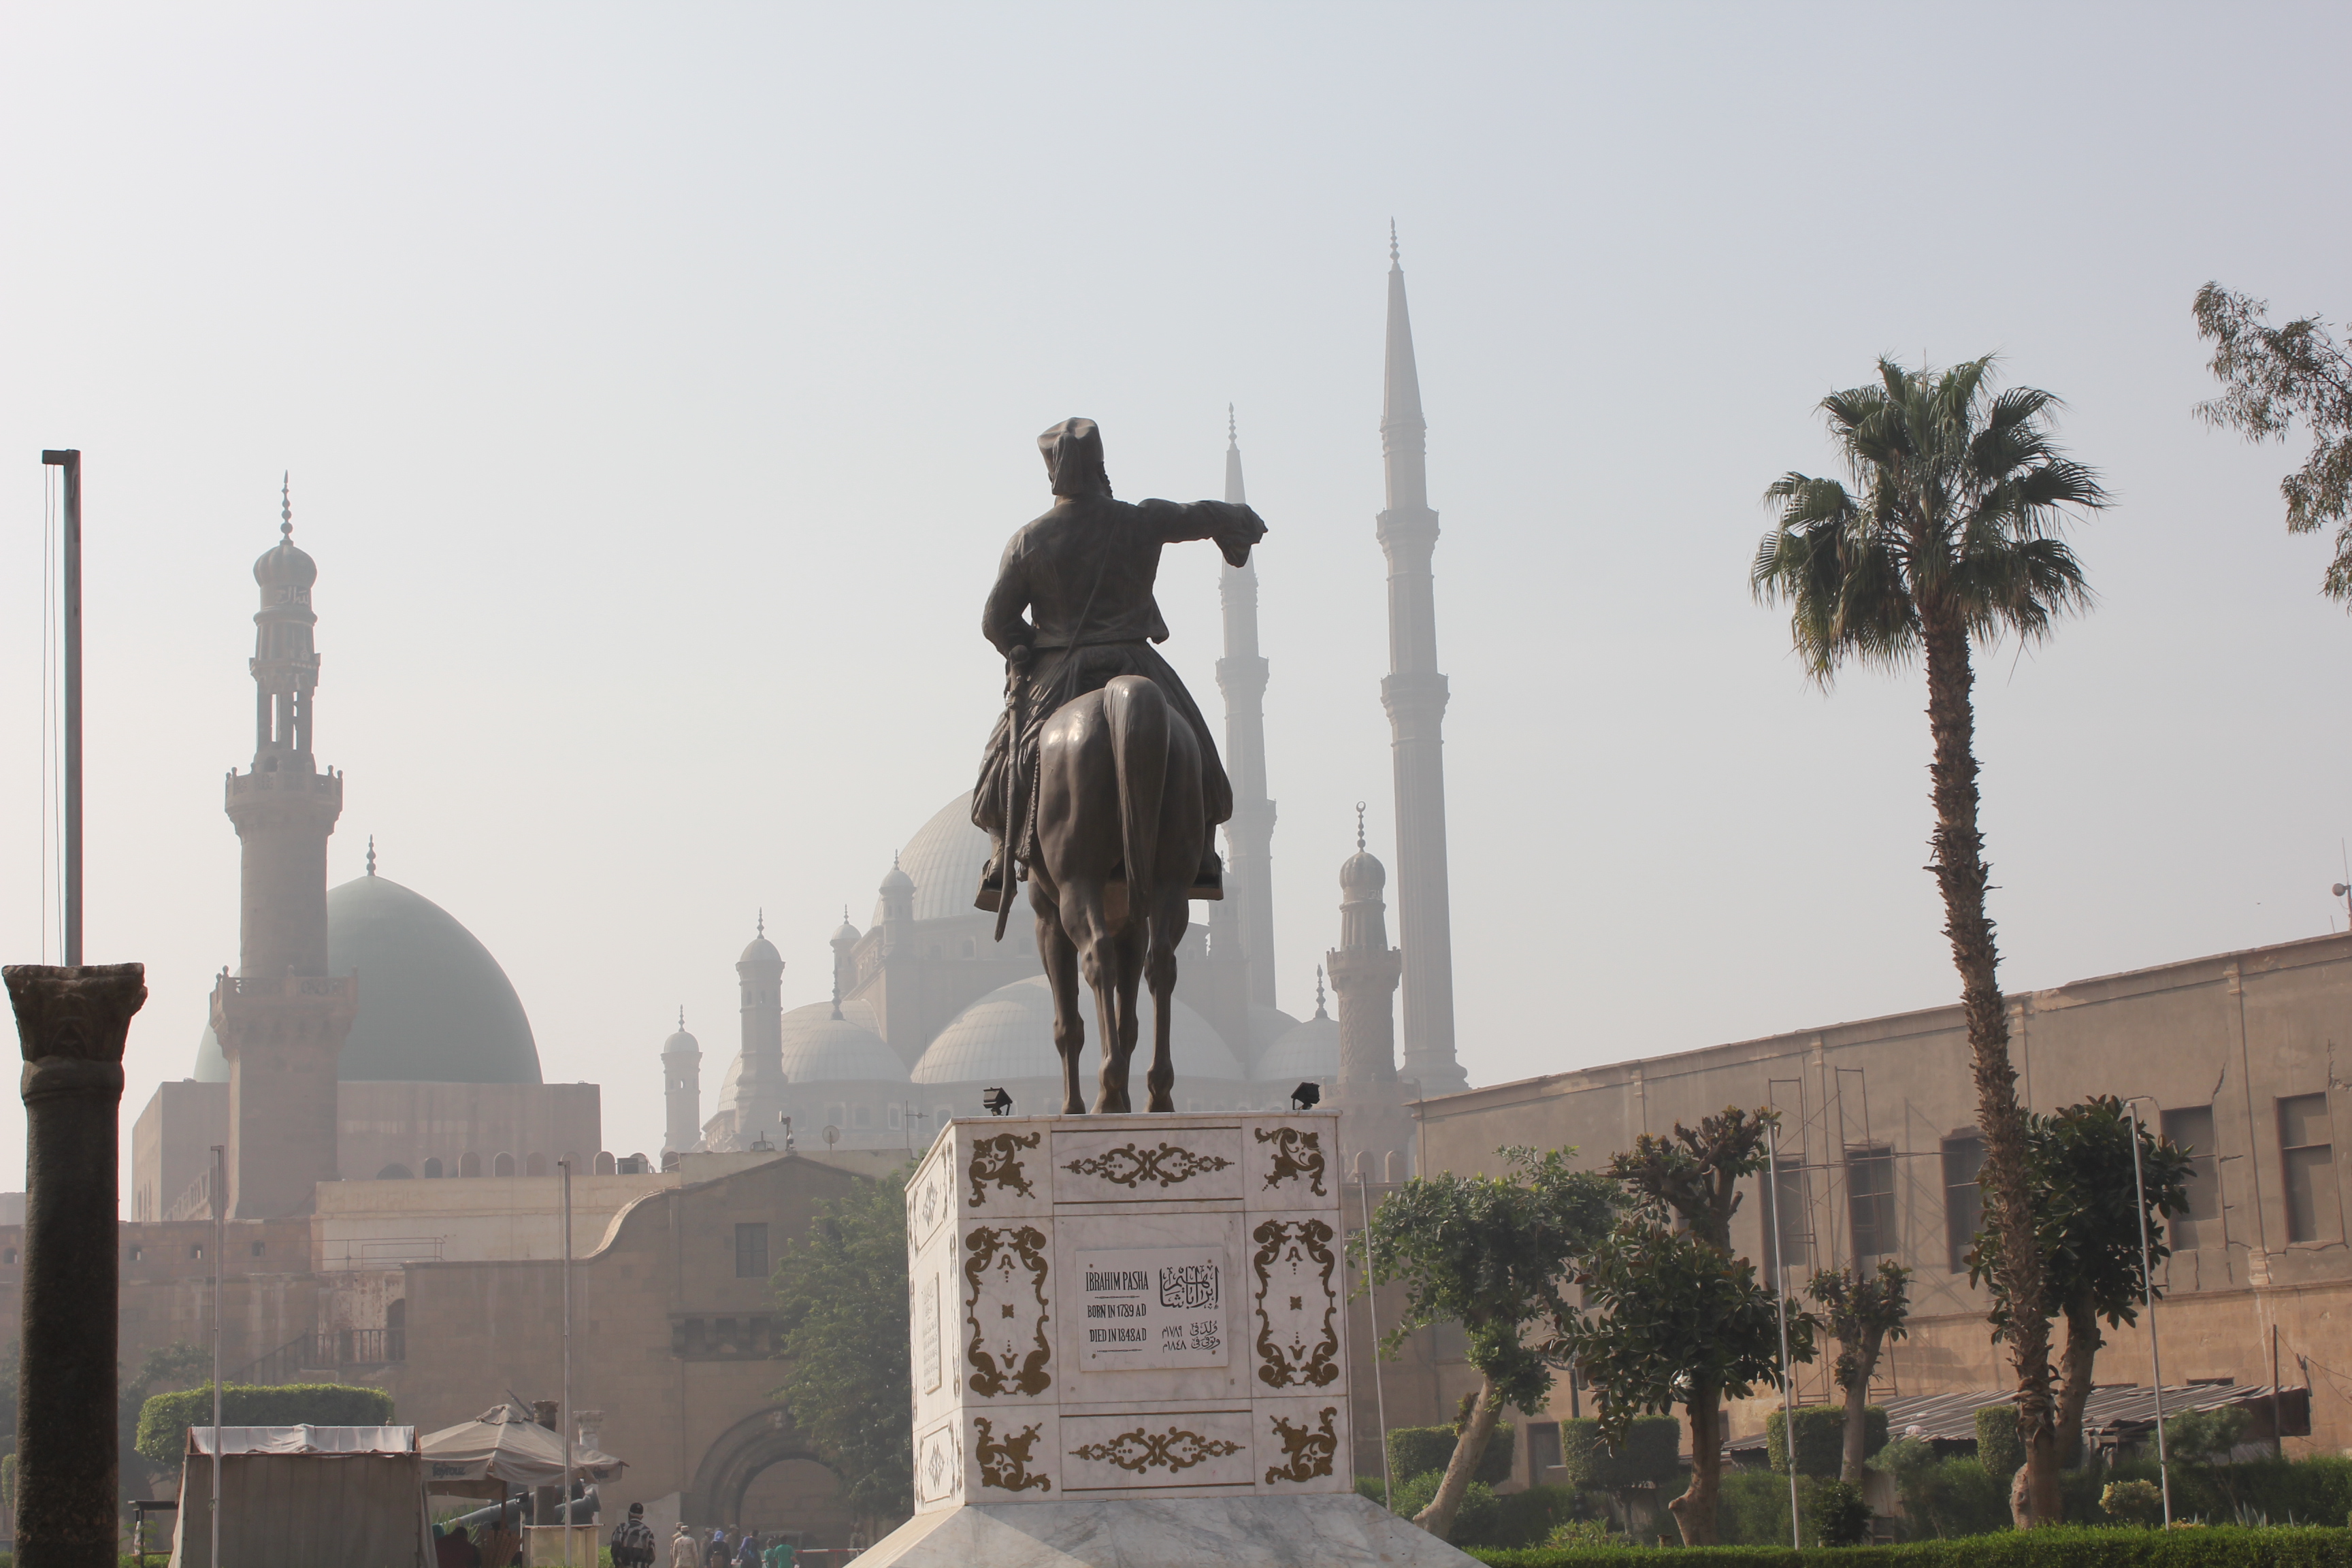 تمثال إبراهيم باشا الكبير ممتطيا جواده في قلعة صلاح الدين - القاهرة - مصر. الصورة: ملهم الملائكة 